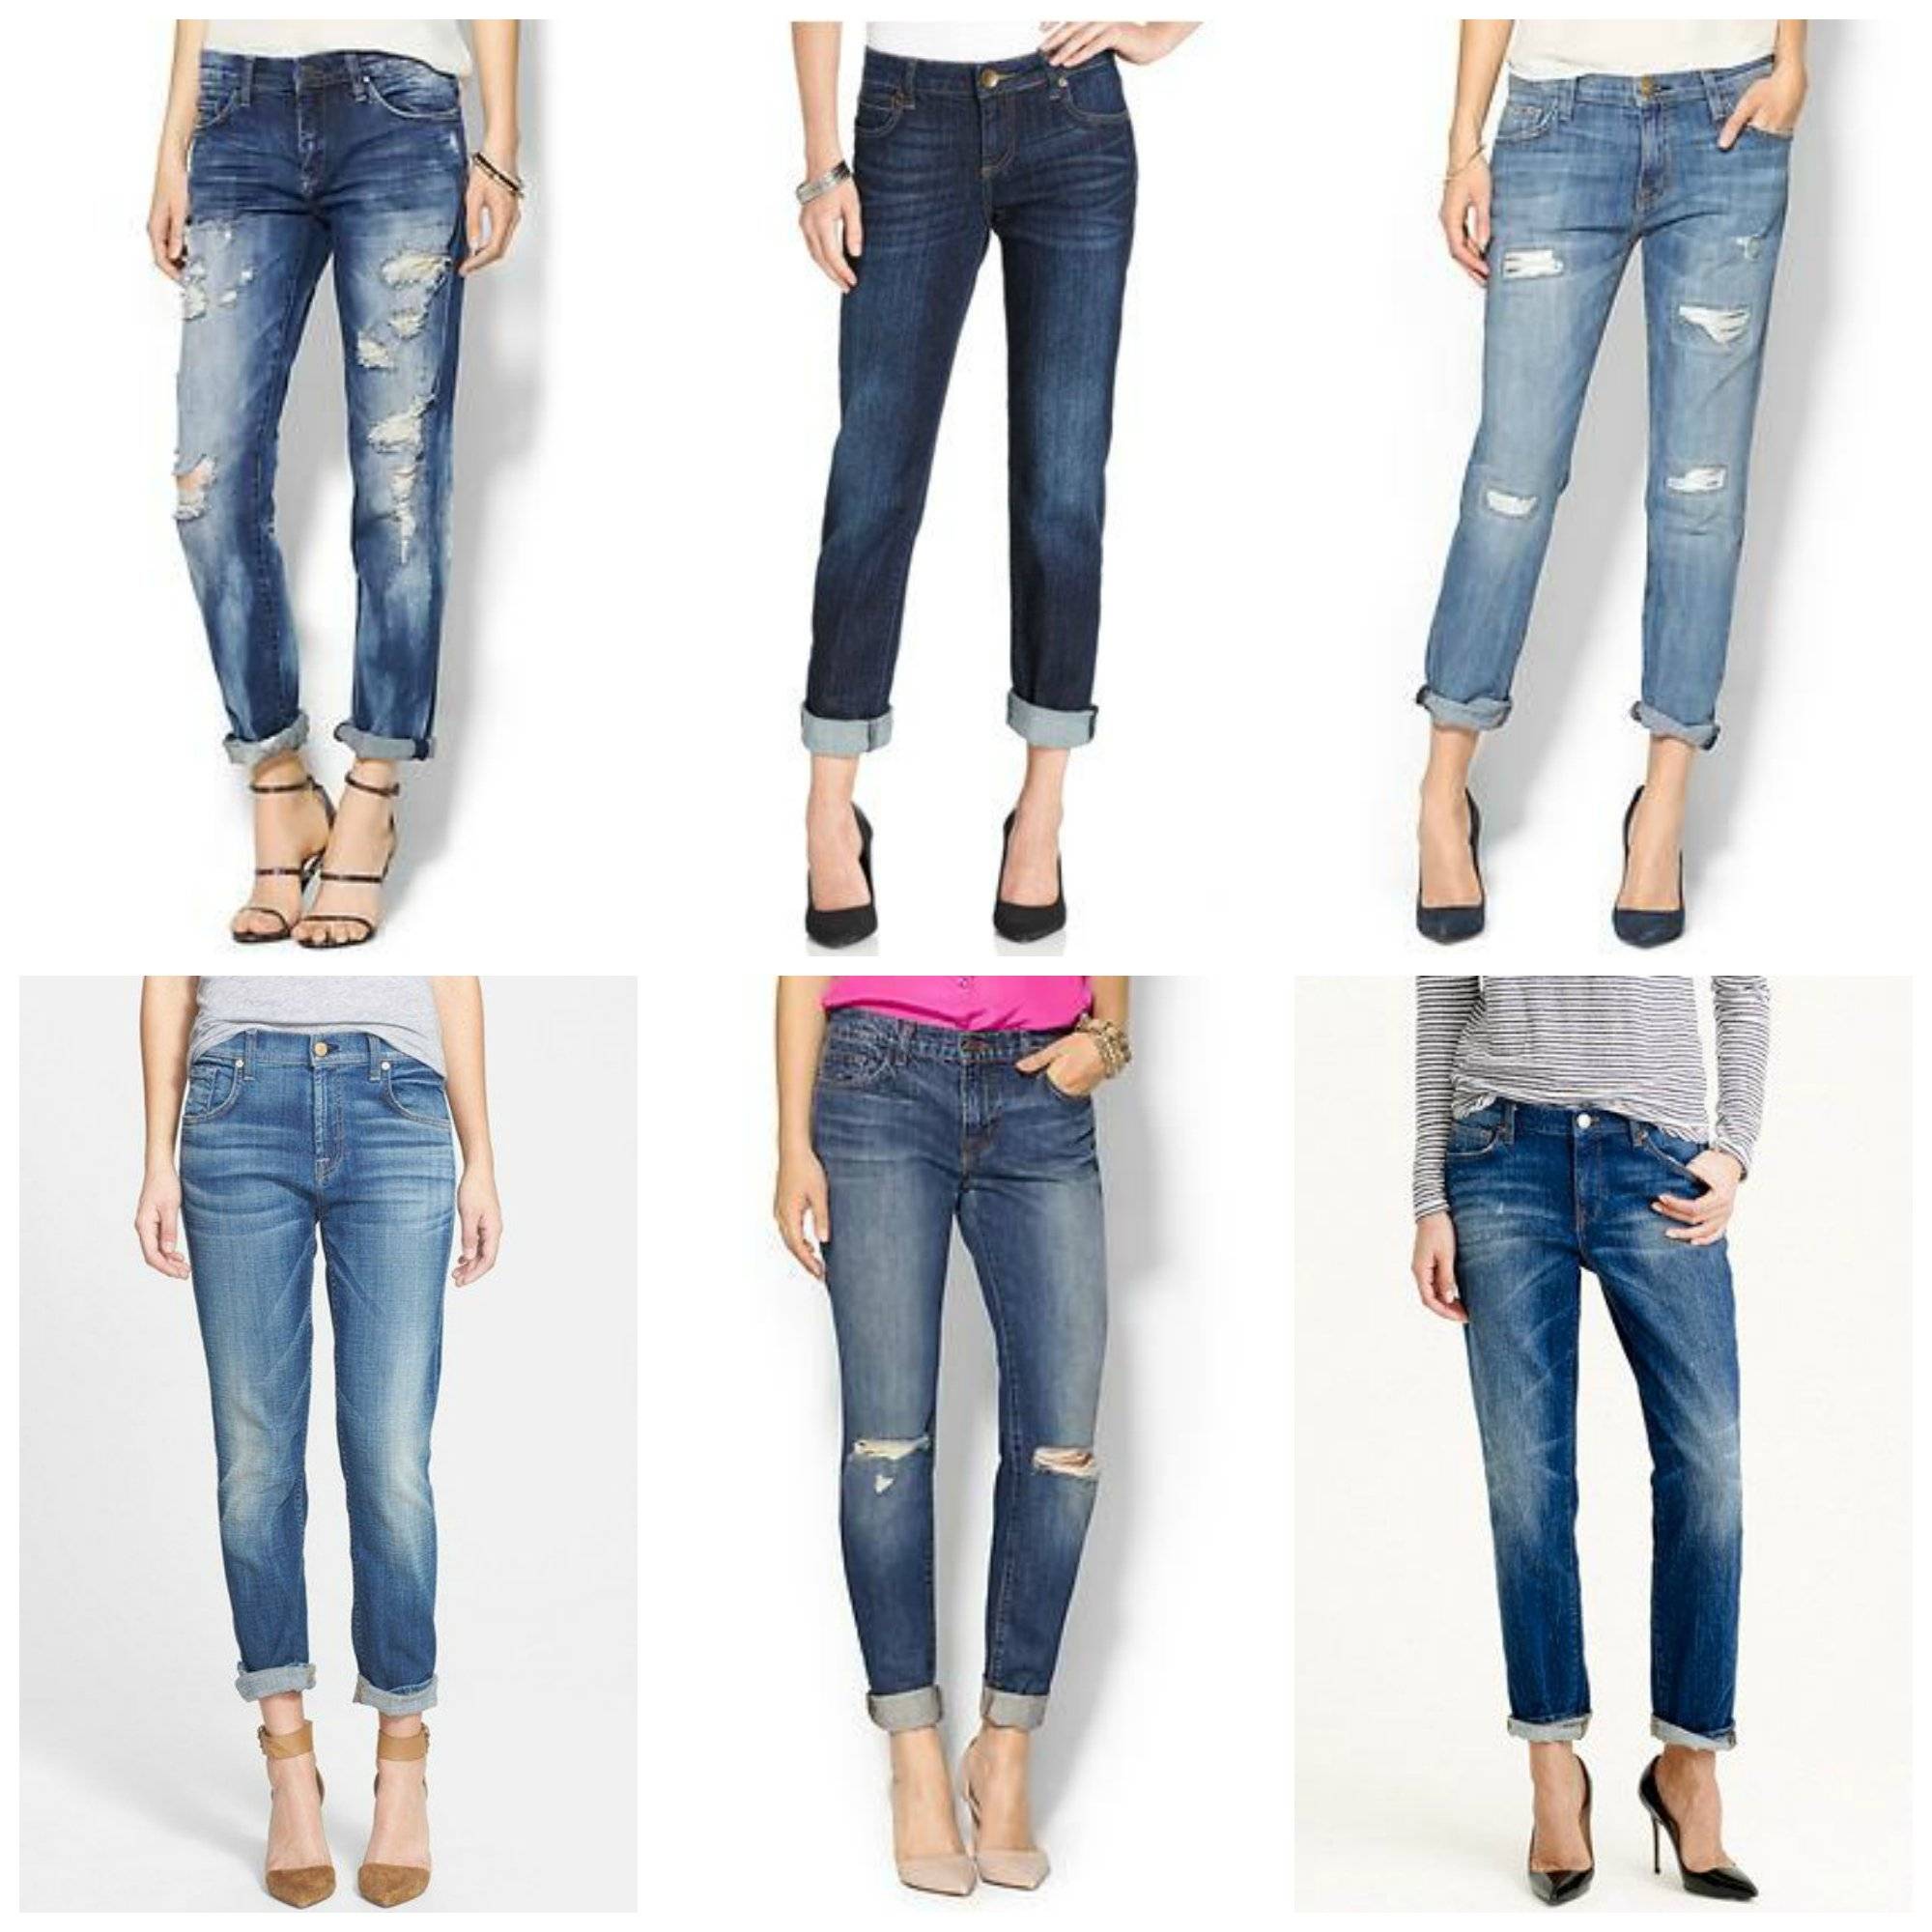 Виды женских джинсов - названия, фото и описания модных моделей.